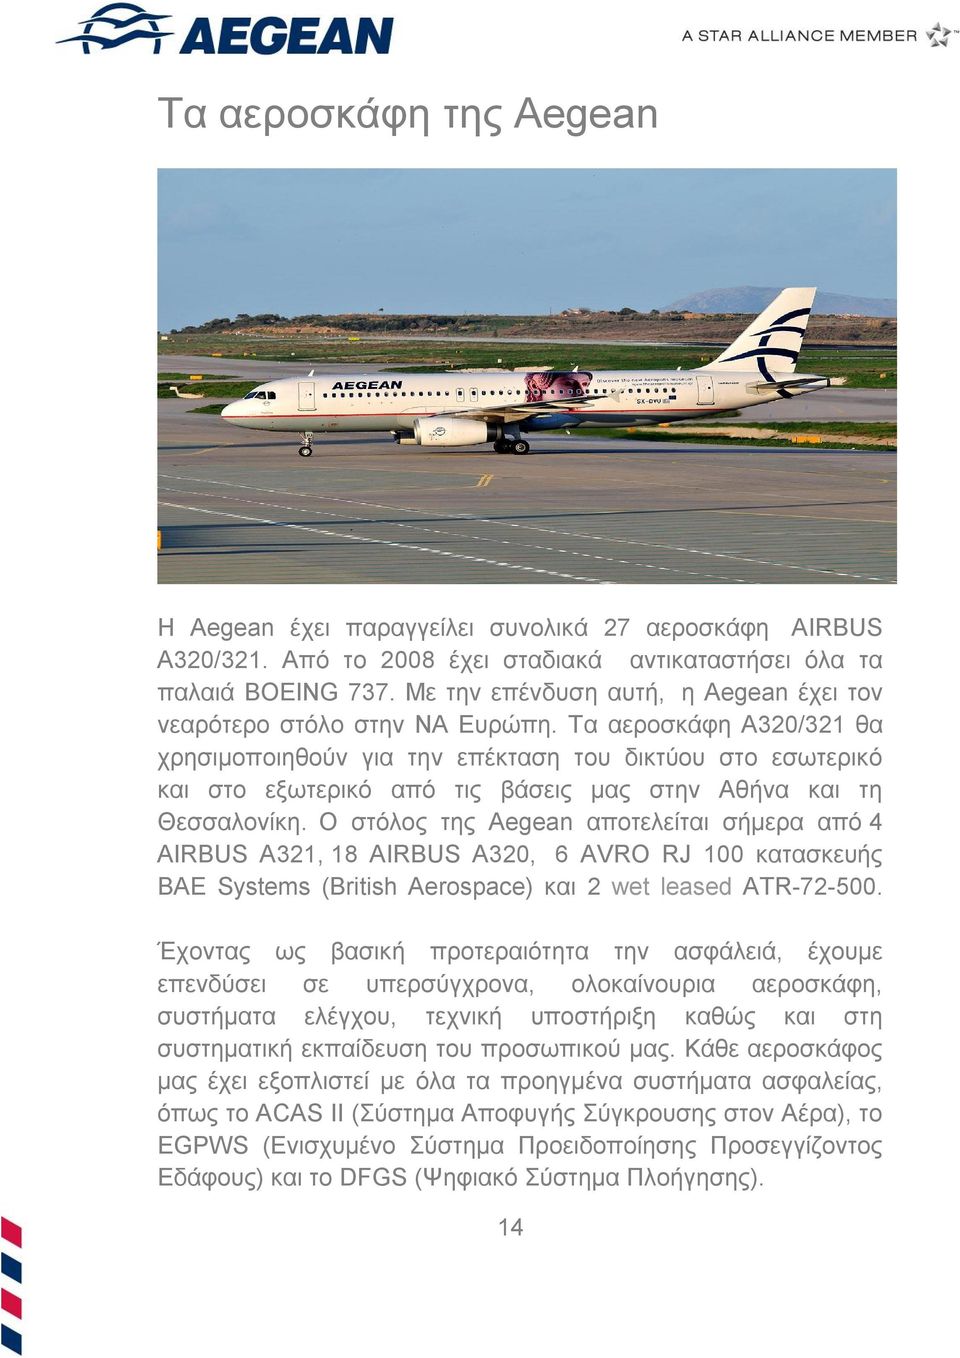 Τα αεροσκάφη Α320/321 θα χρησιμοποιηθούν για την επέκταση του δικτύου στο εσωτερικό και στο εξωτερικό από τις βάσεις μας στην Αθήνα και τη Θεσσαλονίκη.